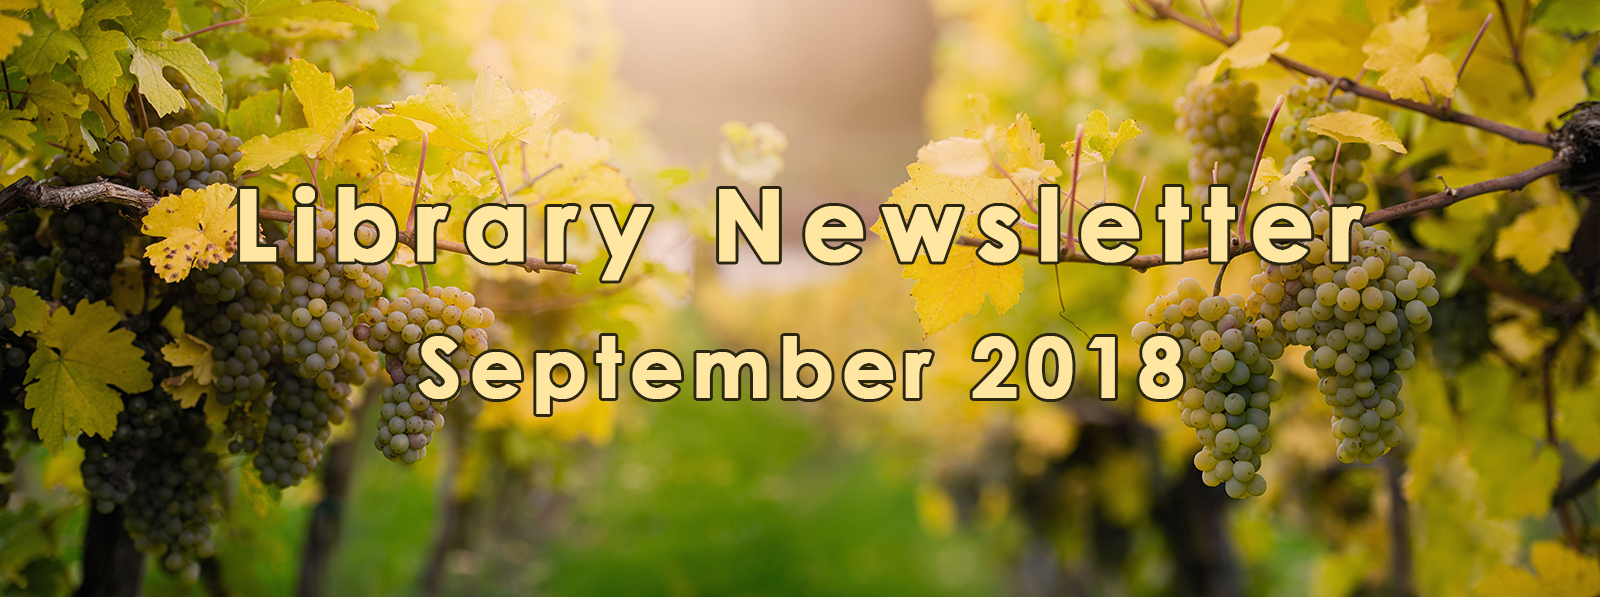 September 2018 Library Newsletter banner